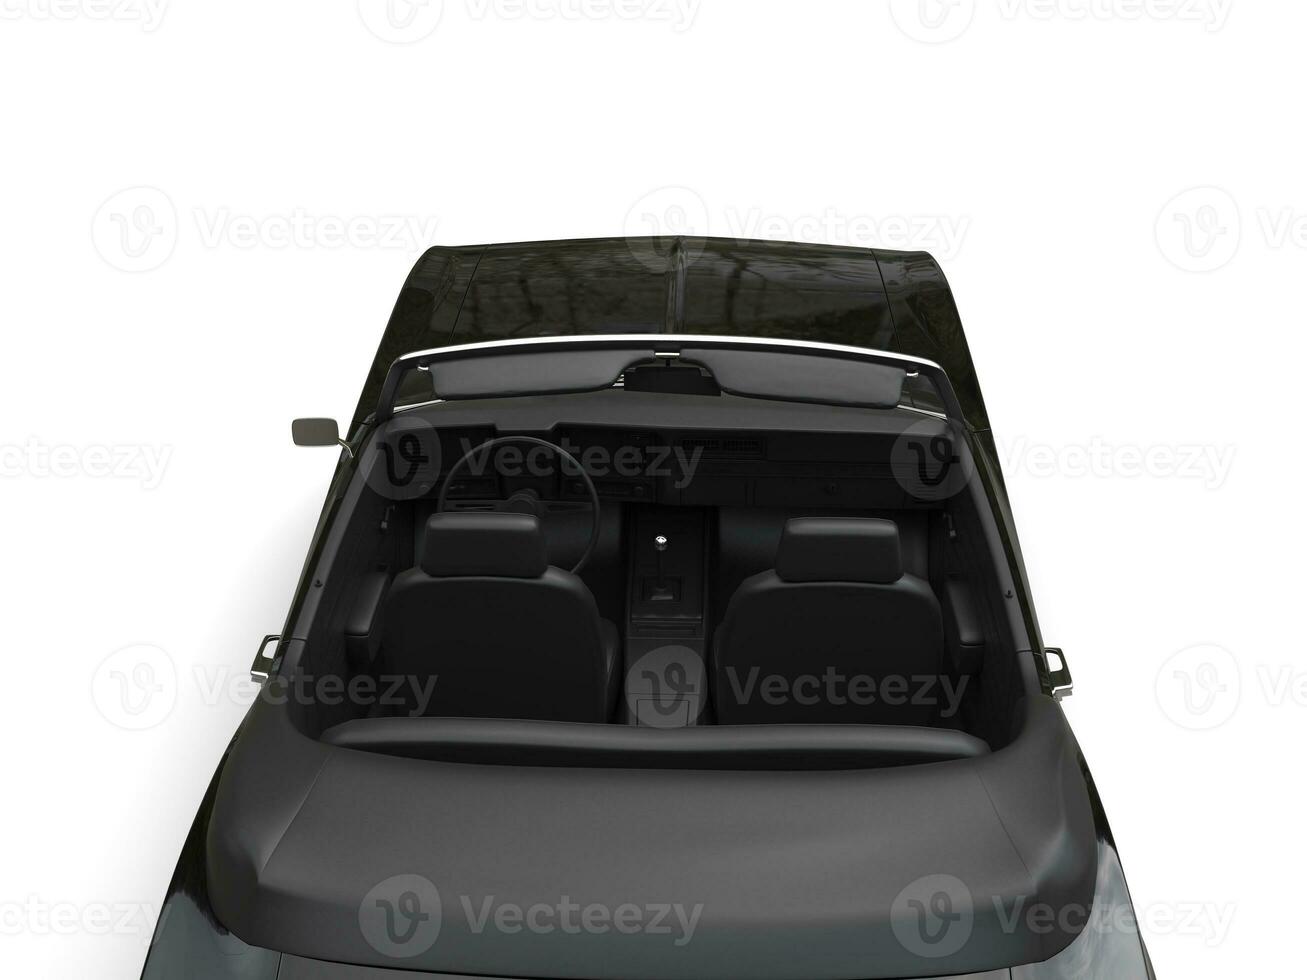 legal Preto vintage cabriolet conversível carro - topo baixa costas Visão com cobertura baixa foto